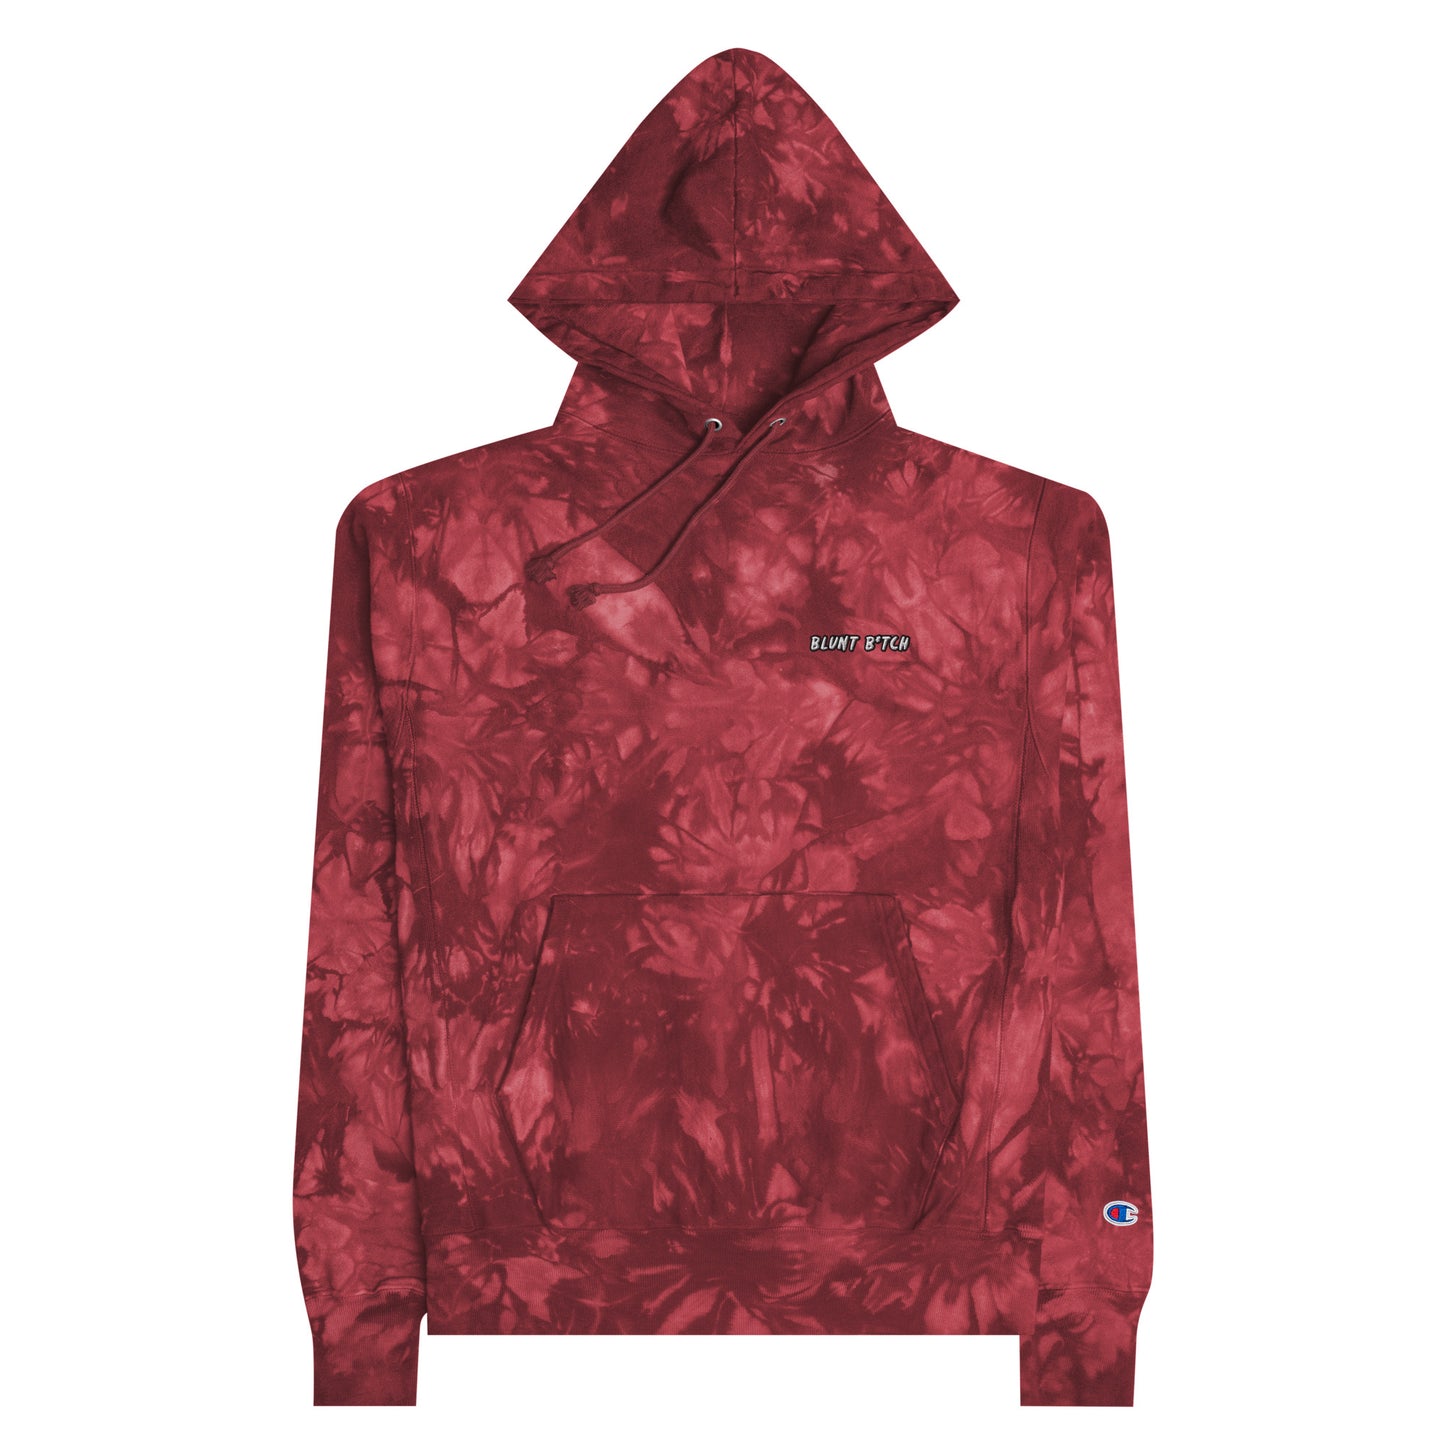 Unisex Champion tie-dye hoodie Blunt Btch